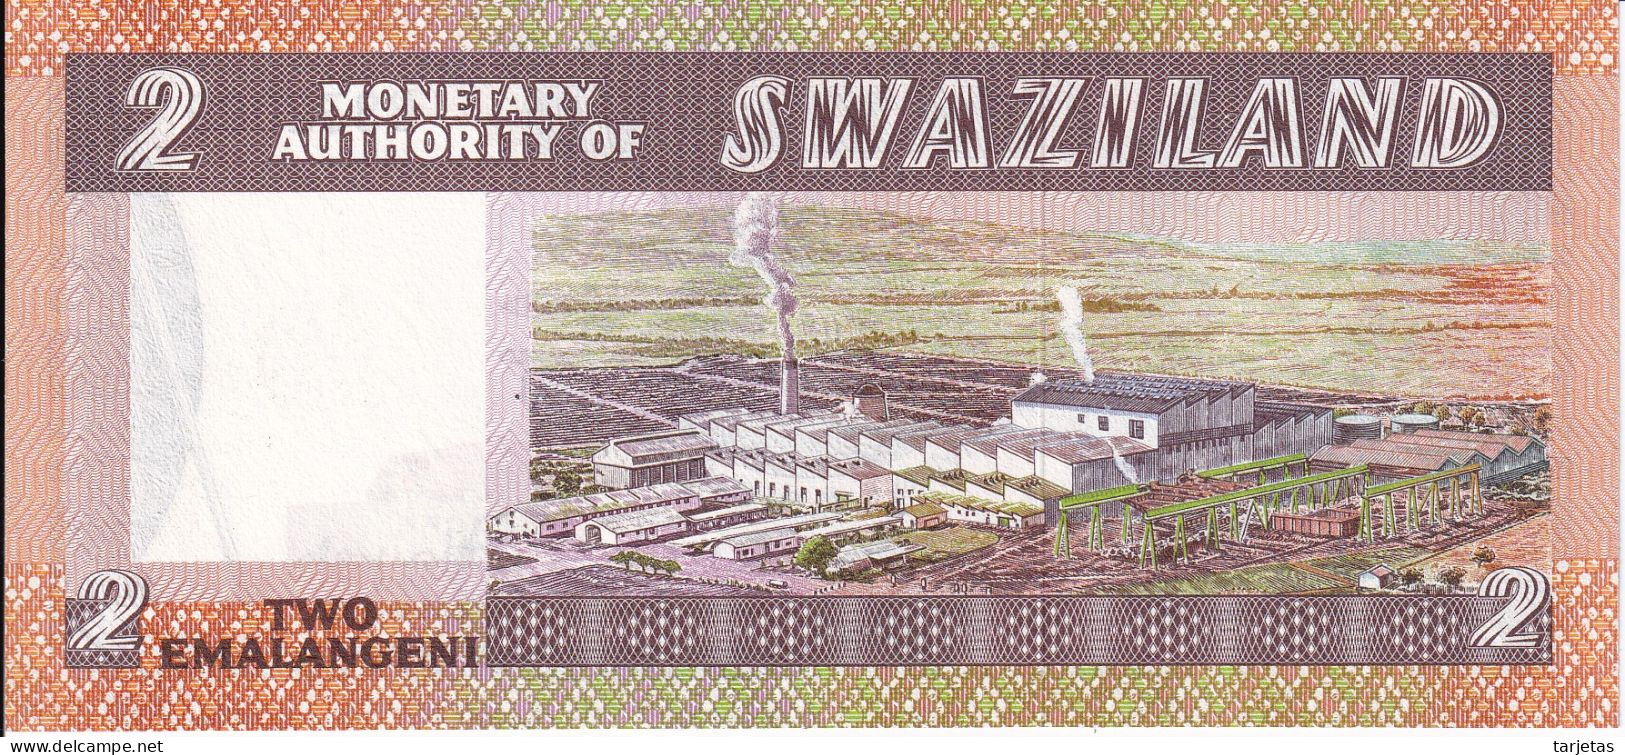 BILLETE DE SWAZILAND DE 2 EMALANGENI DEL AÑO 1974 SIN CIRCULAR (UNC)  (BANKNOTE) - Swaziland